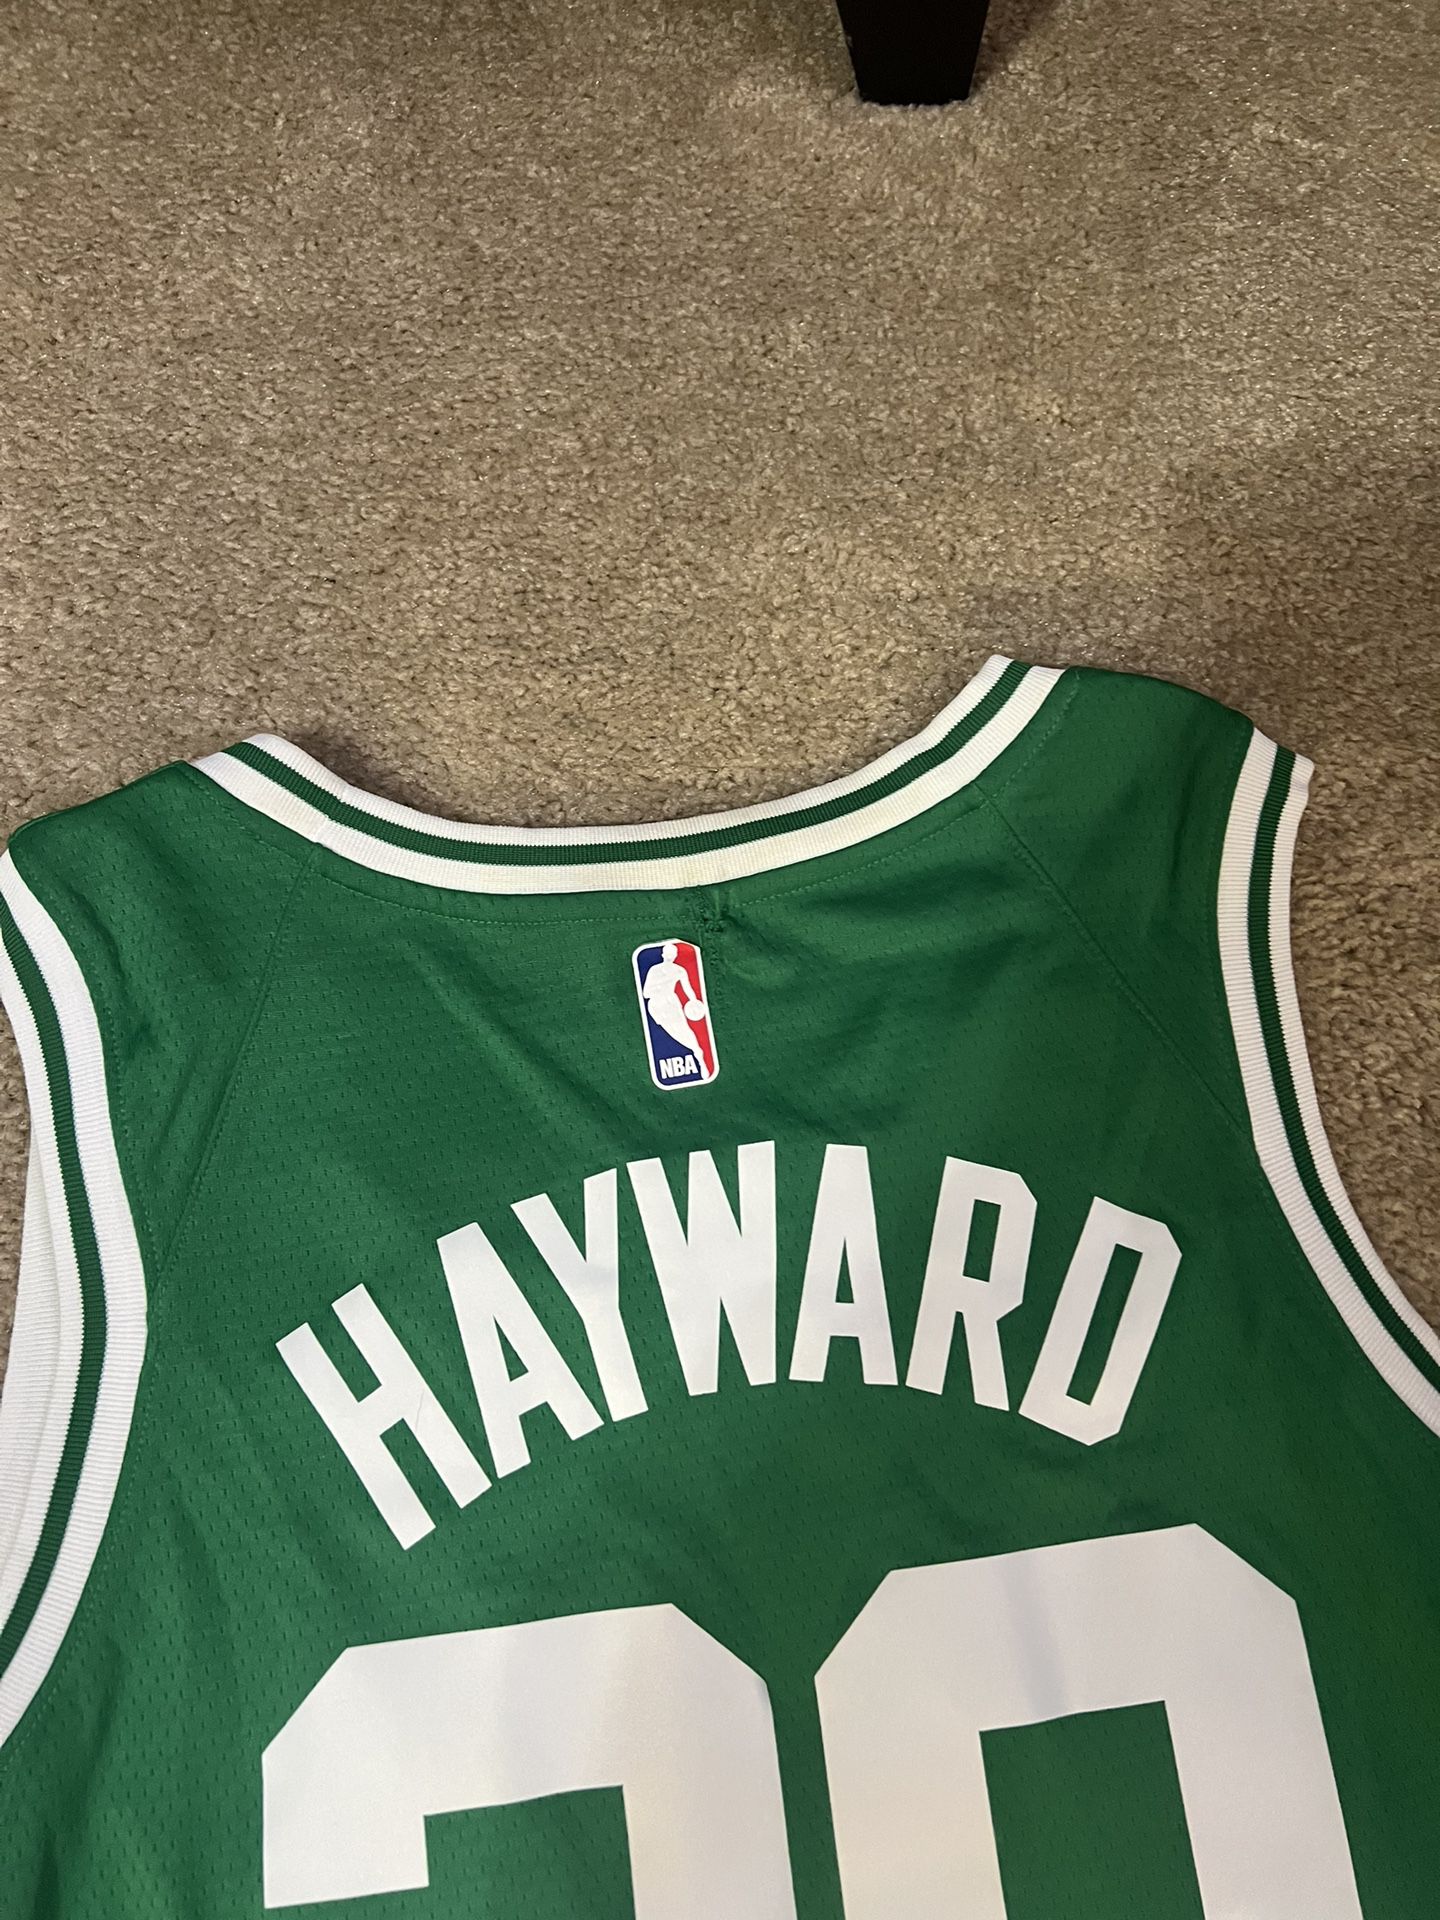 Gordon Hayward Boston Celtics Autographed Nike Earned Edition Swingman  Jersey